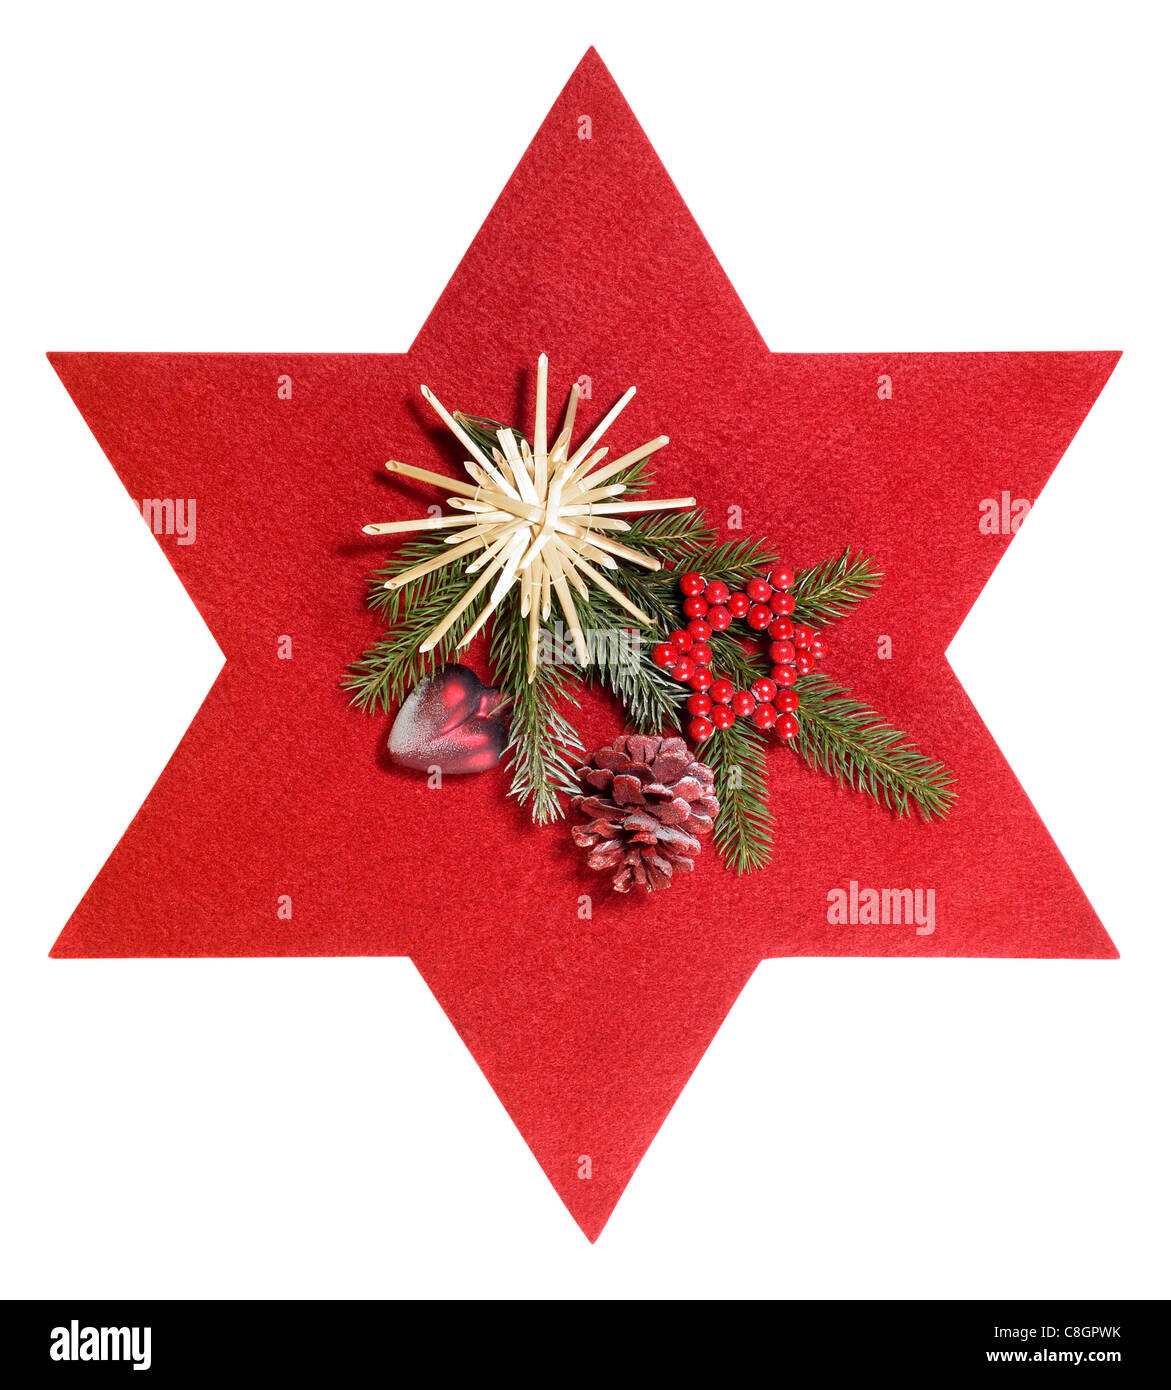 Scatto frontale di alcune decorazioni natalizie con feltro rosso star, isolato su bianco con tracciato di ritaglio Foto Stock